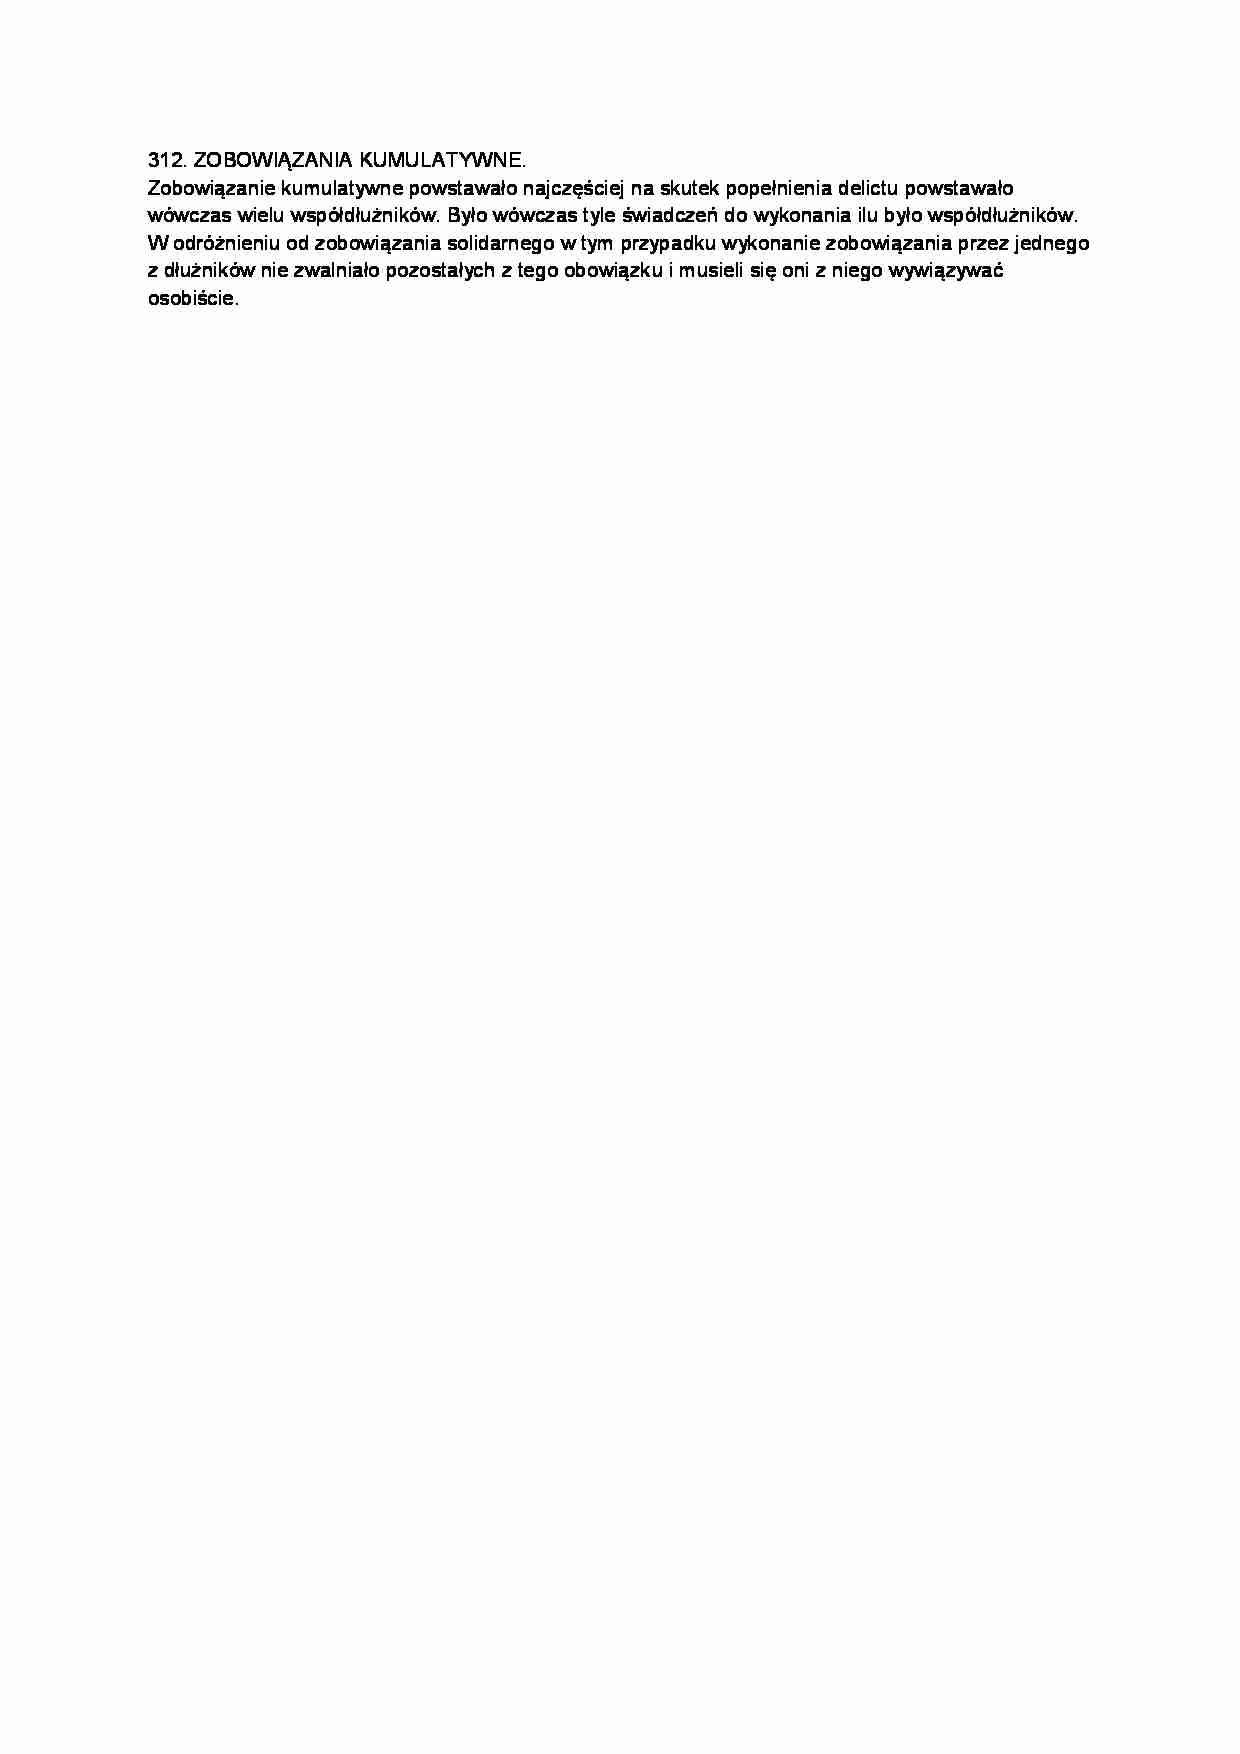 Zobowiązania kumulatywne-opracowanie - strona 1